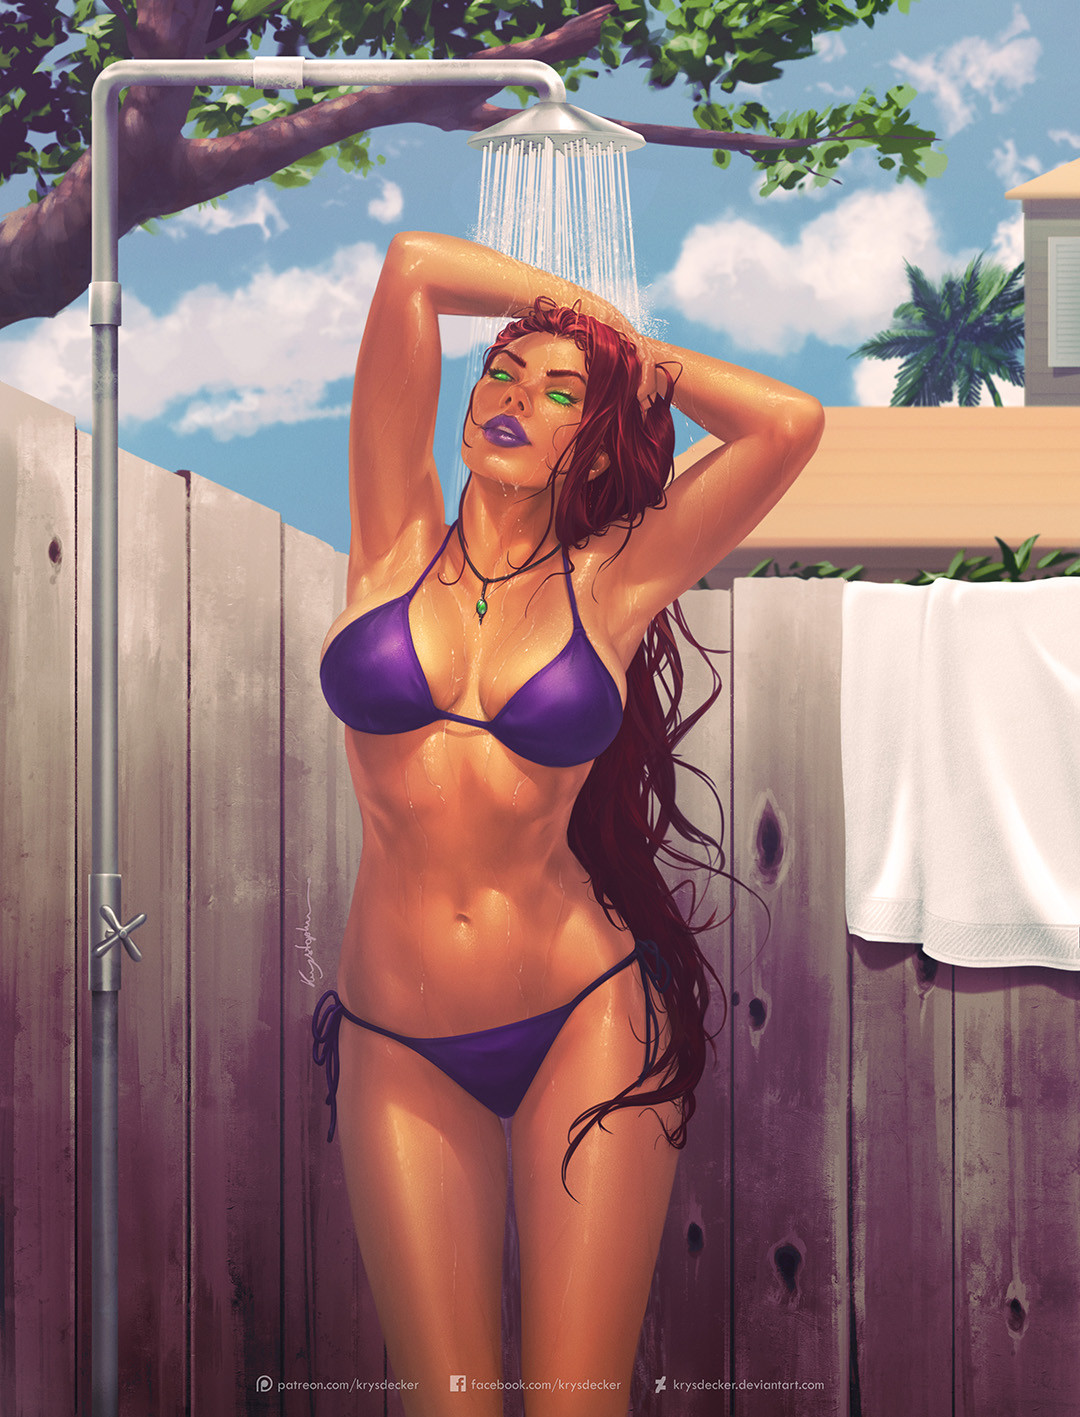 General 1080x1417 women shower drawing bikini redhead Starfire Krys Decker digital art